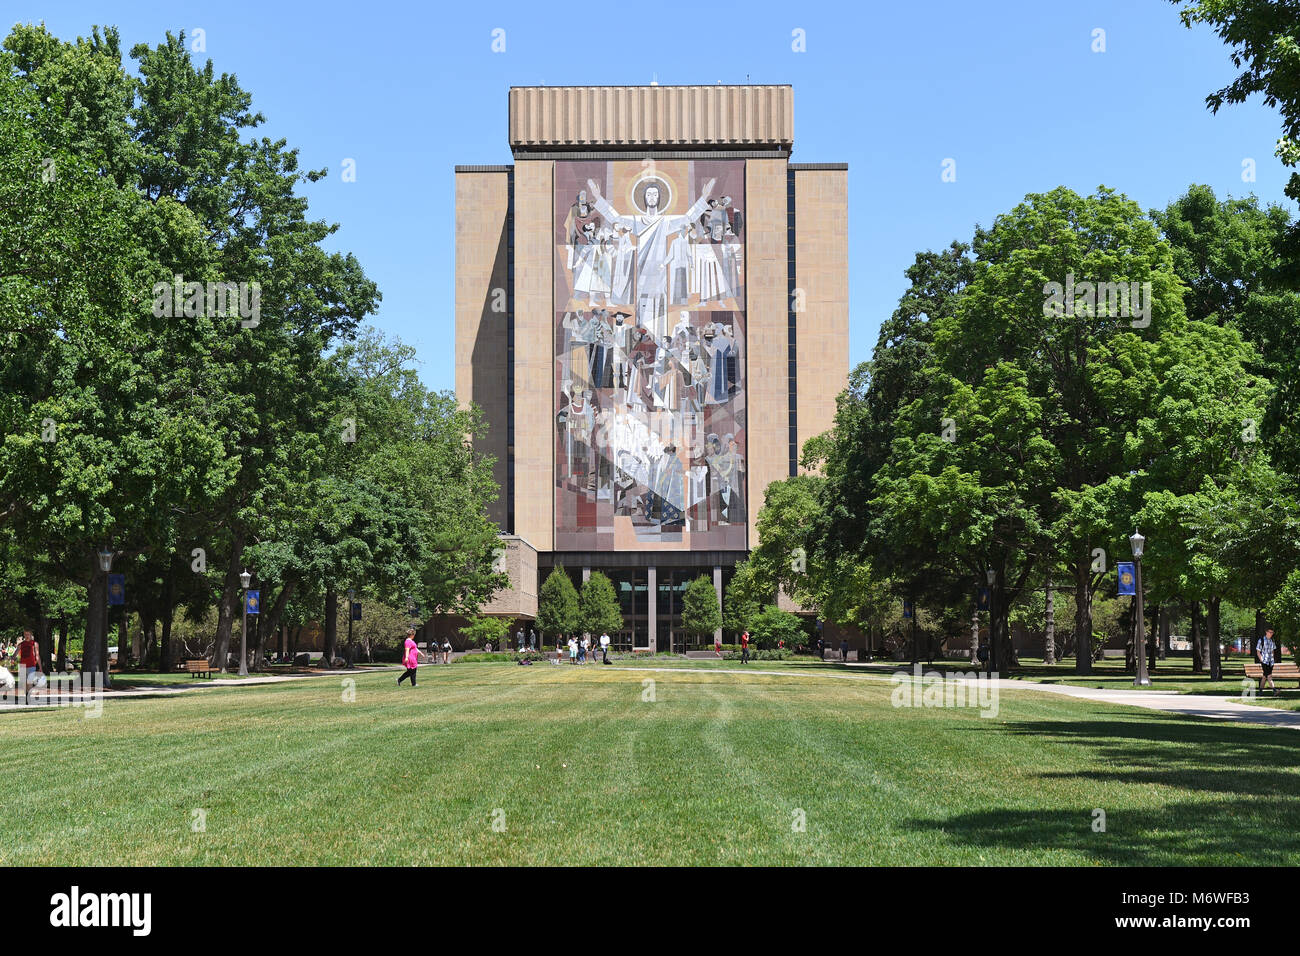 South Bend, IN, Stati Uniti d'America - 24 Giugno 2016: murale chiamato Touchdown Gesù presso la University of Notre Dame campus in South Bend, Indiana. Foto Stock